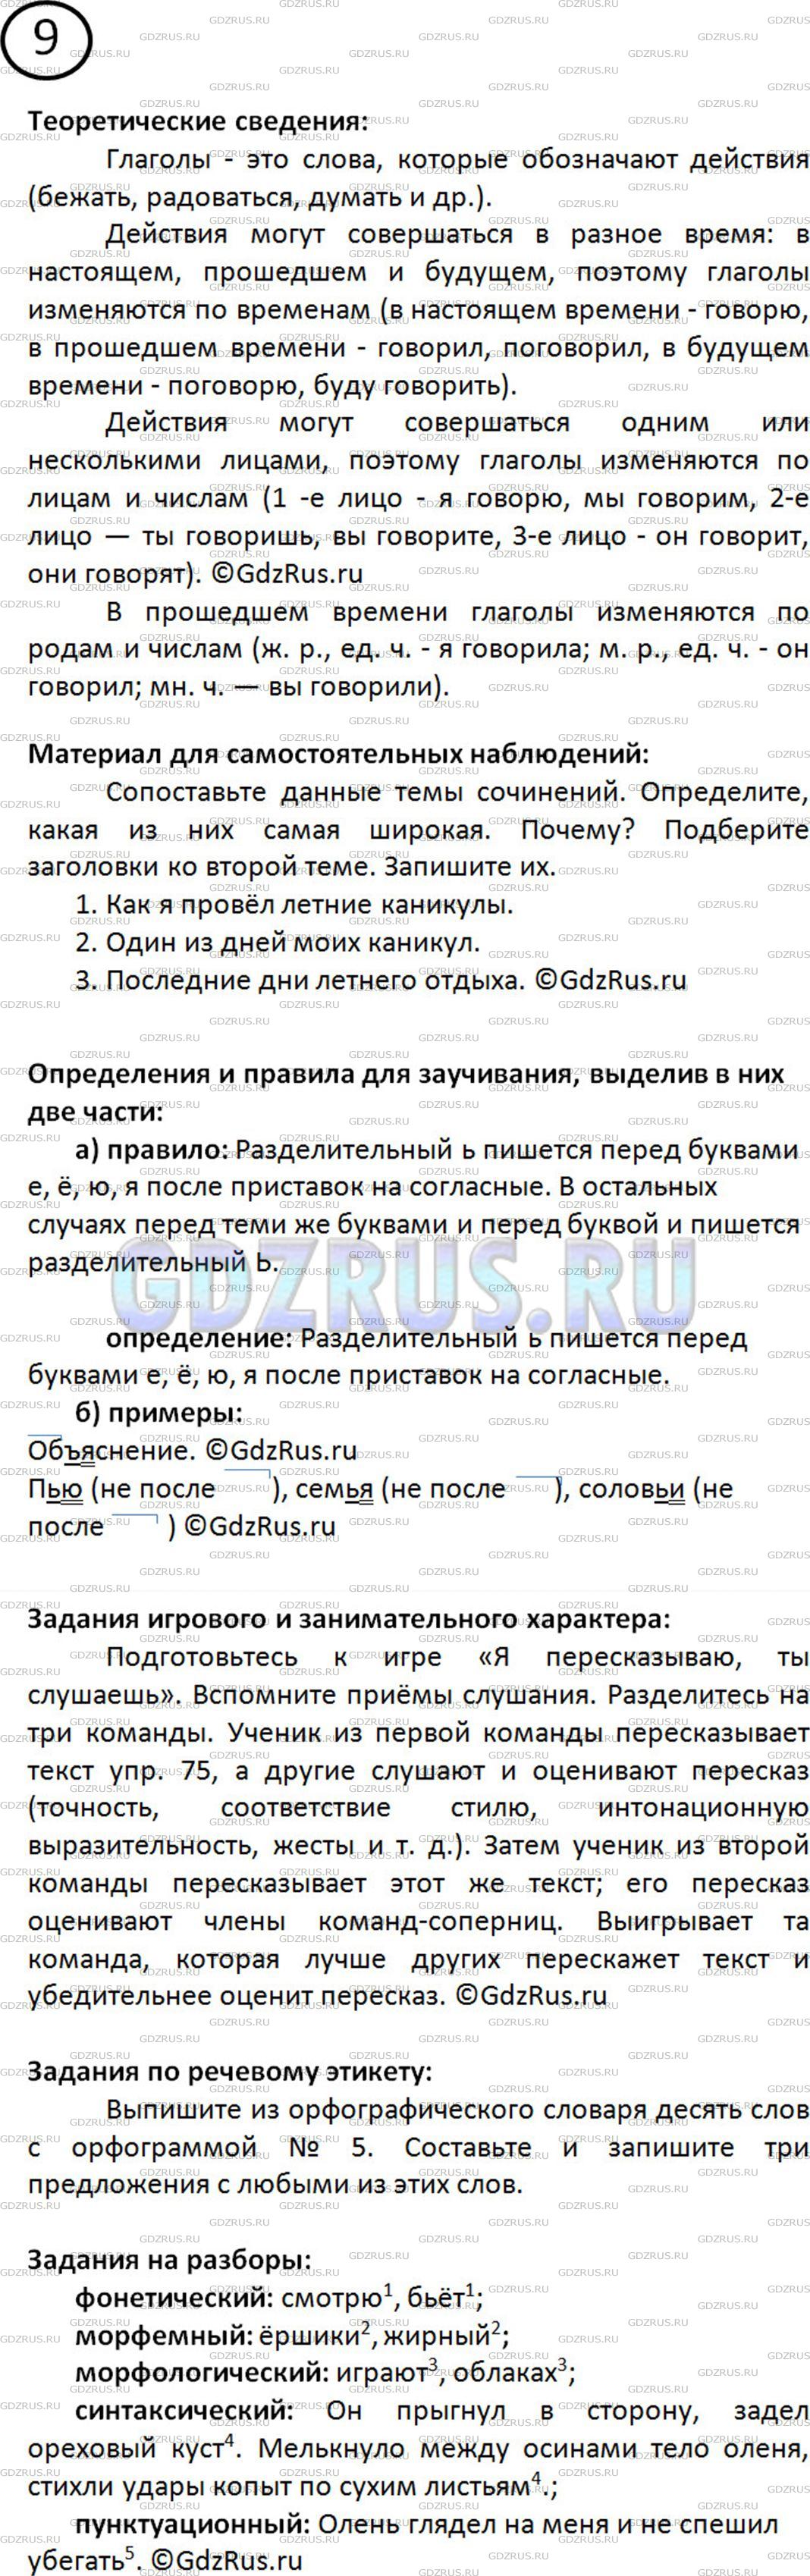 Фото решения 2: Номер №9 из ГДЗ по Русскому языку 5 класс: Ладыженская Т.А. 2012г.